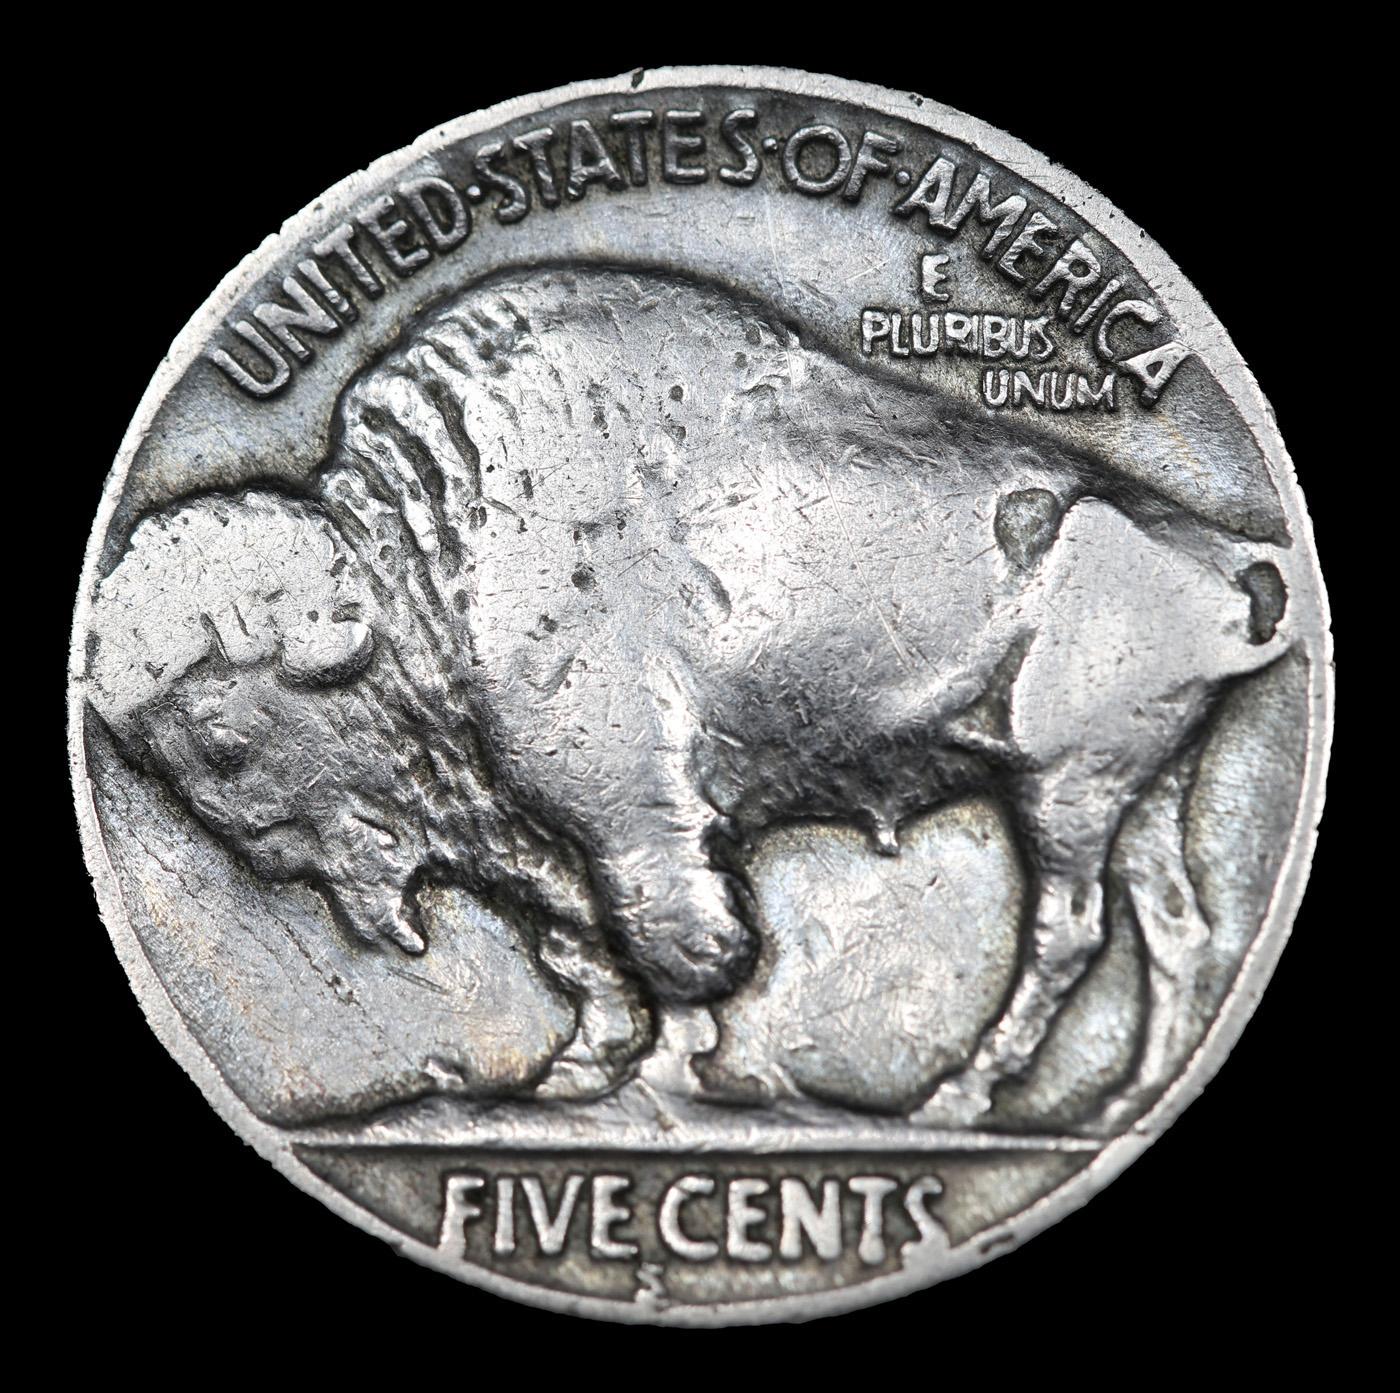 1920-s Buffalo Nickel 5c Grades vf++